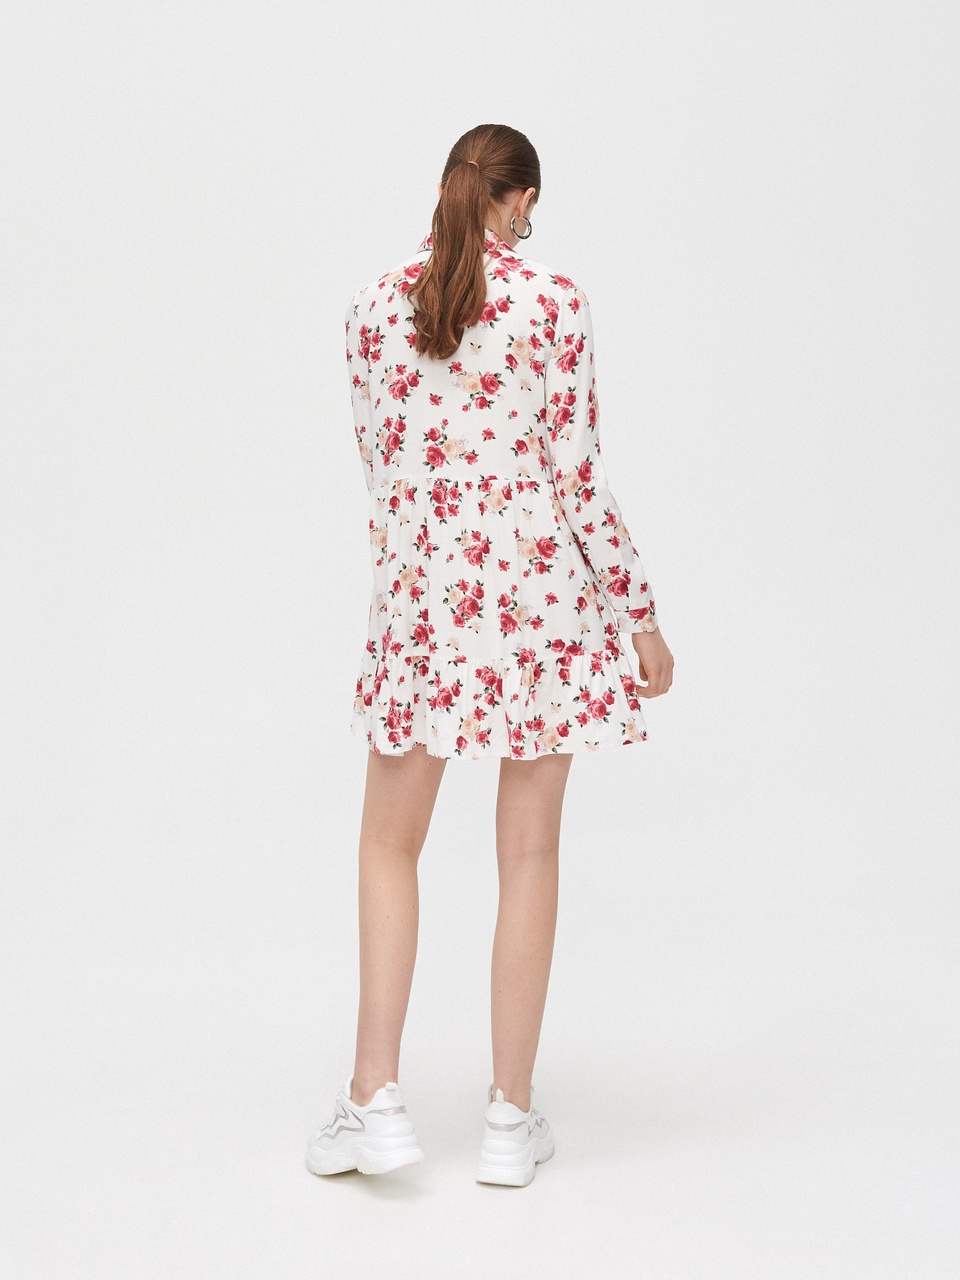 Платье в цветы - 999 ₽, заказать онлайн.